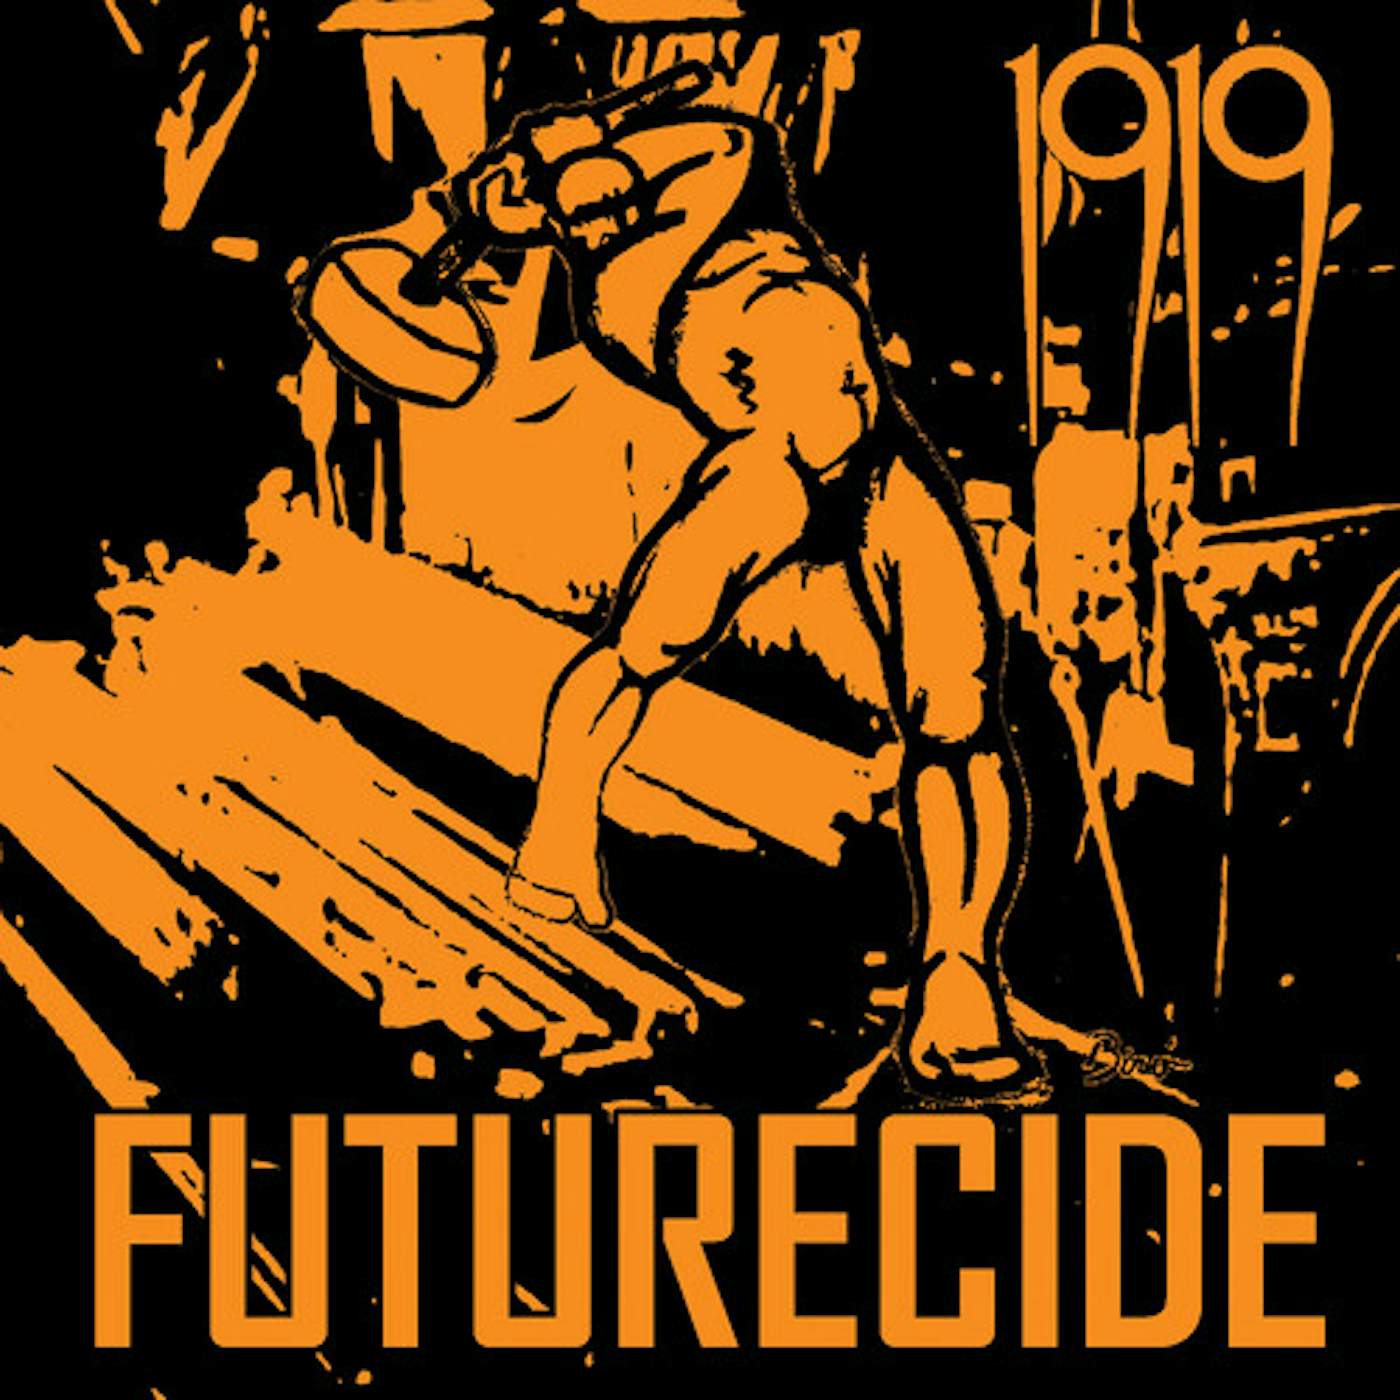 1919 Futurecide Vinyl Record